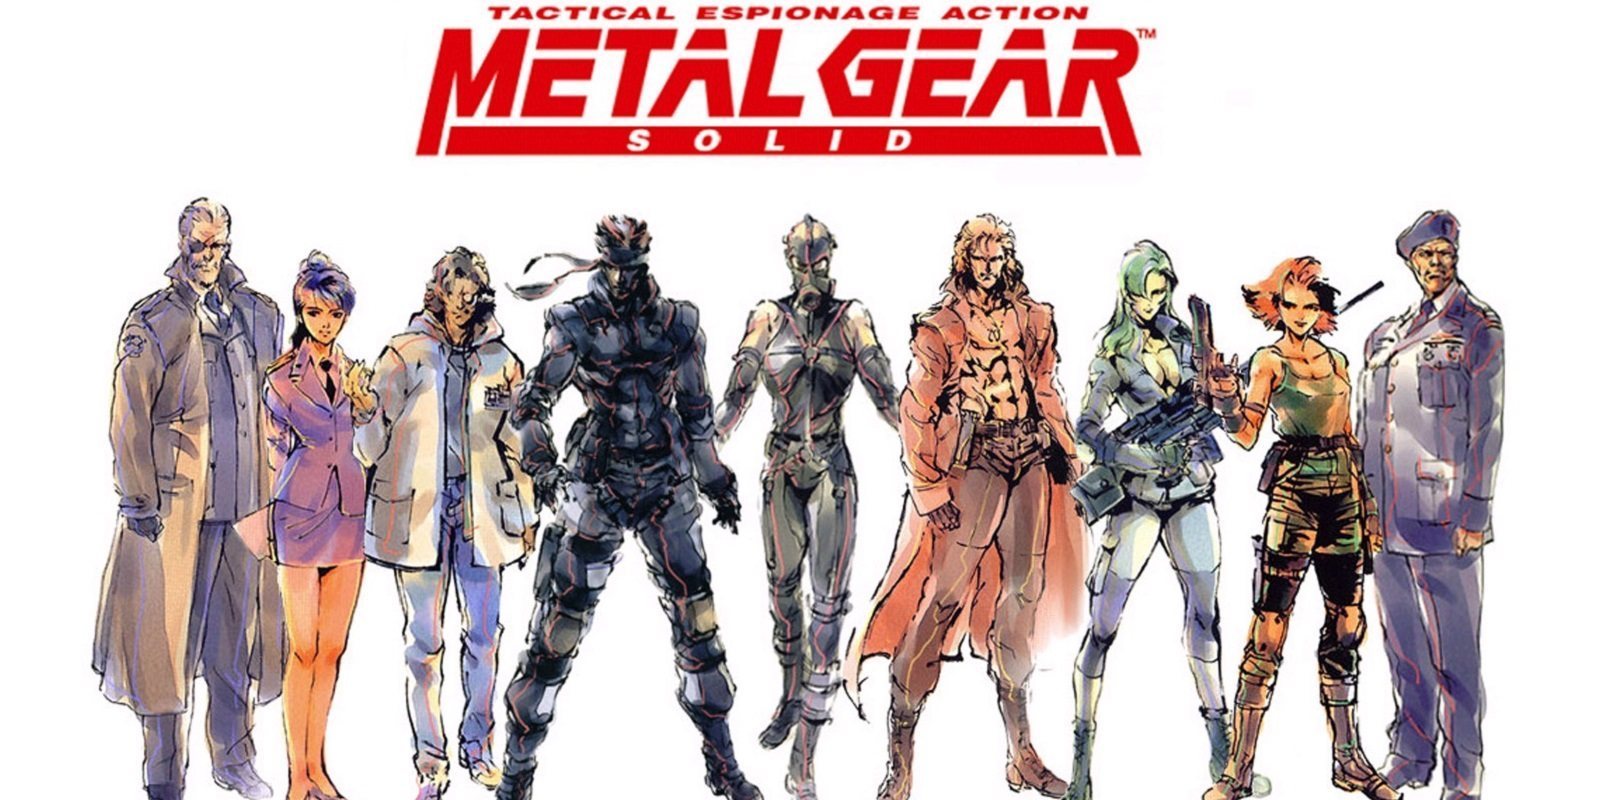 Así he completado 'Metal Gear Solid' en dificultad Extreme 20 años después